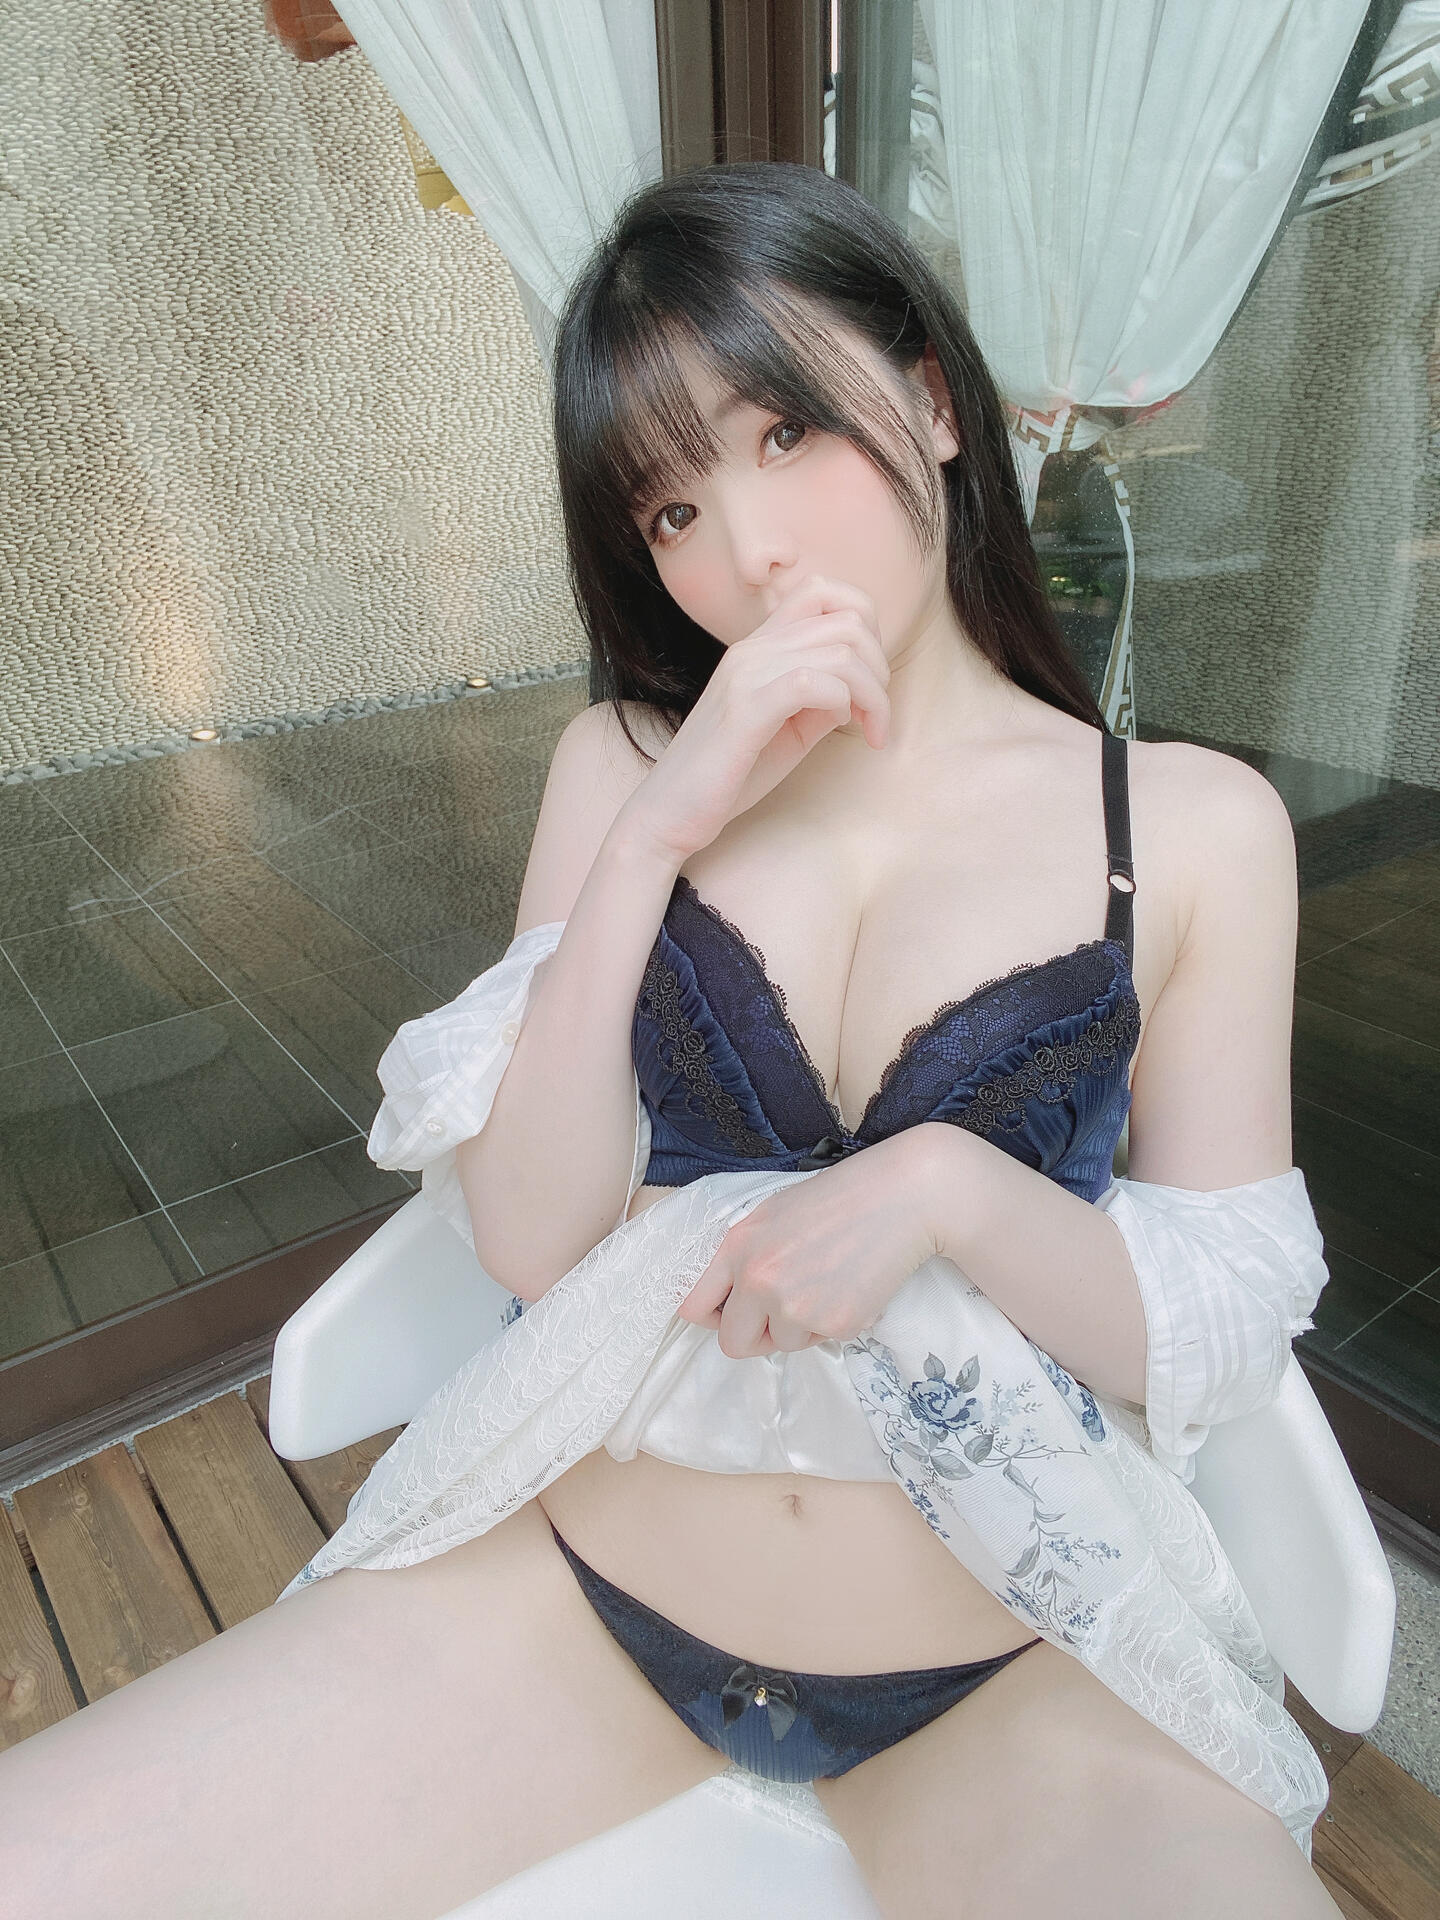 Shimo / shimotsuki18 / shimotsukiTW / 霜月 Nude Patreon Leaks 1